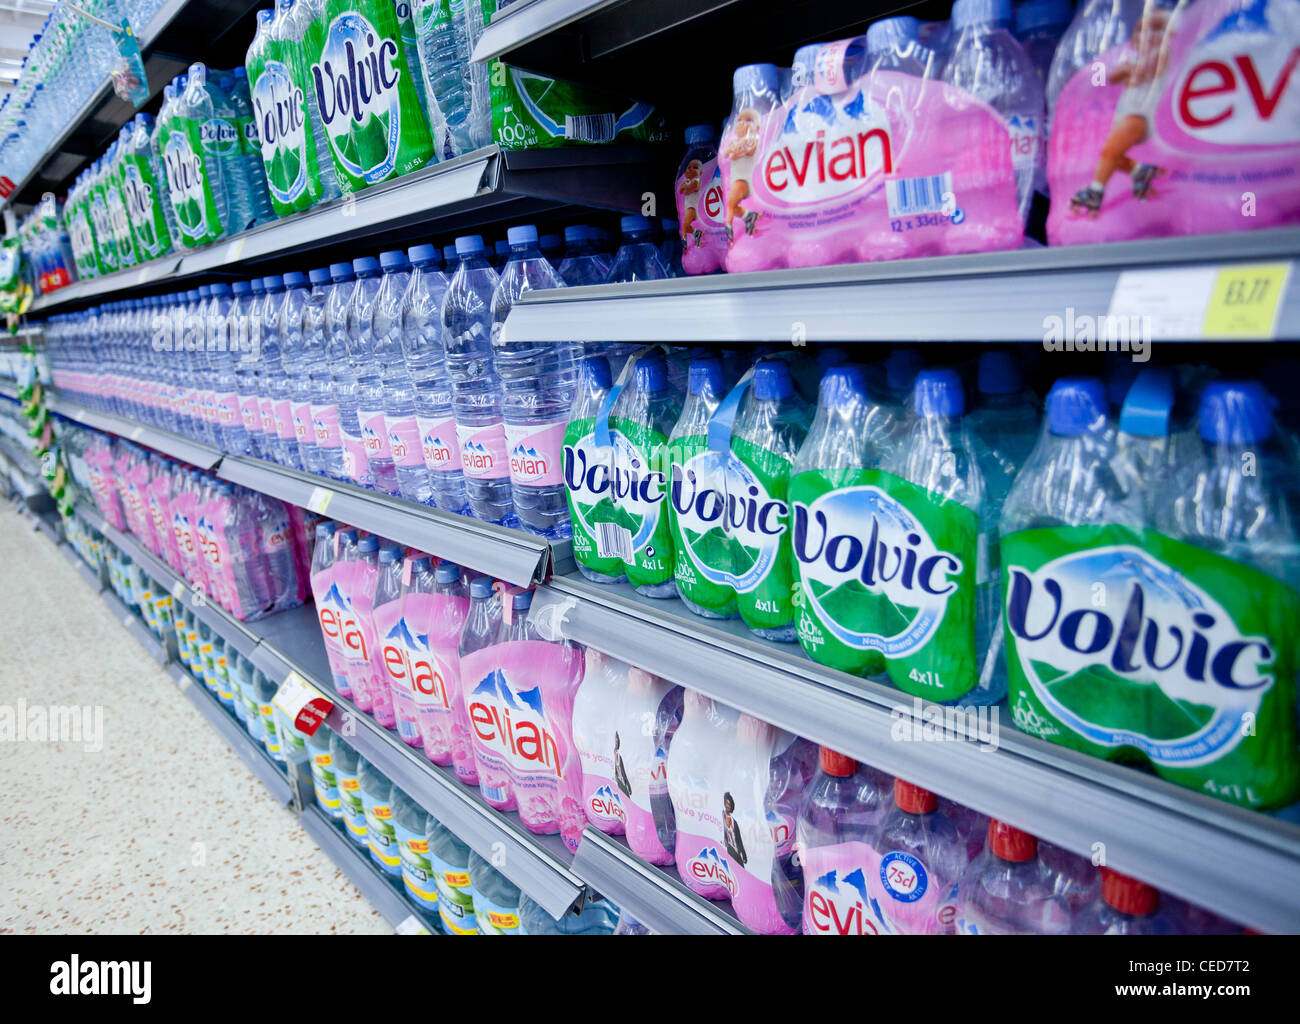 Regale mit Flaschen Wasser zu verkaufen, England, Uk Stockfotografie - Alamy